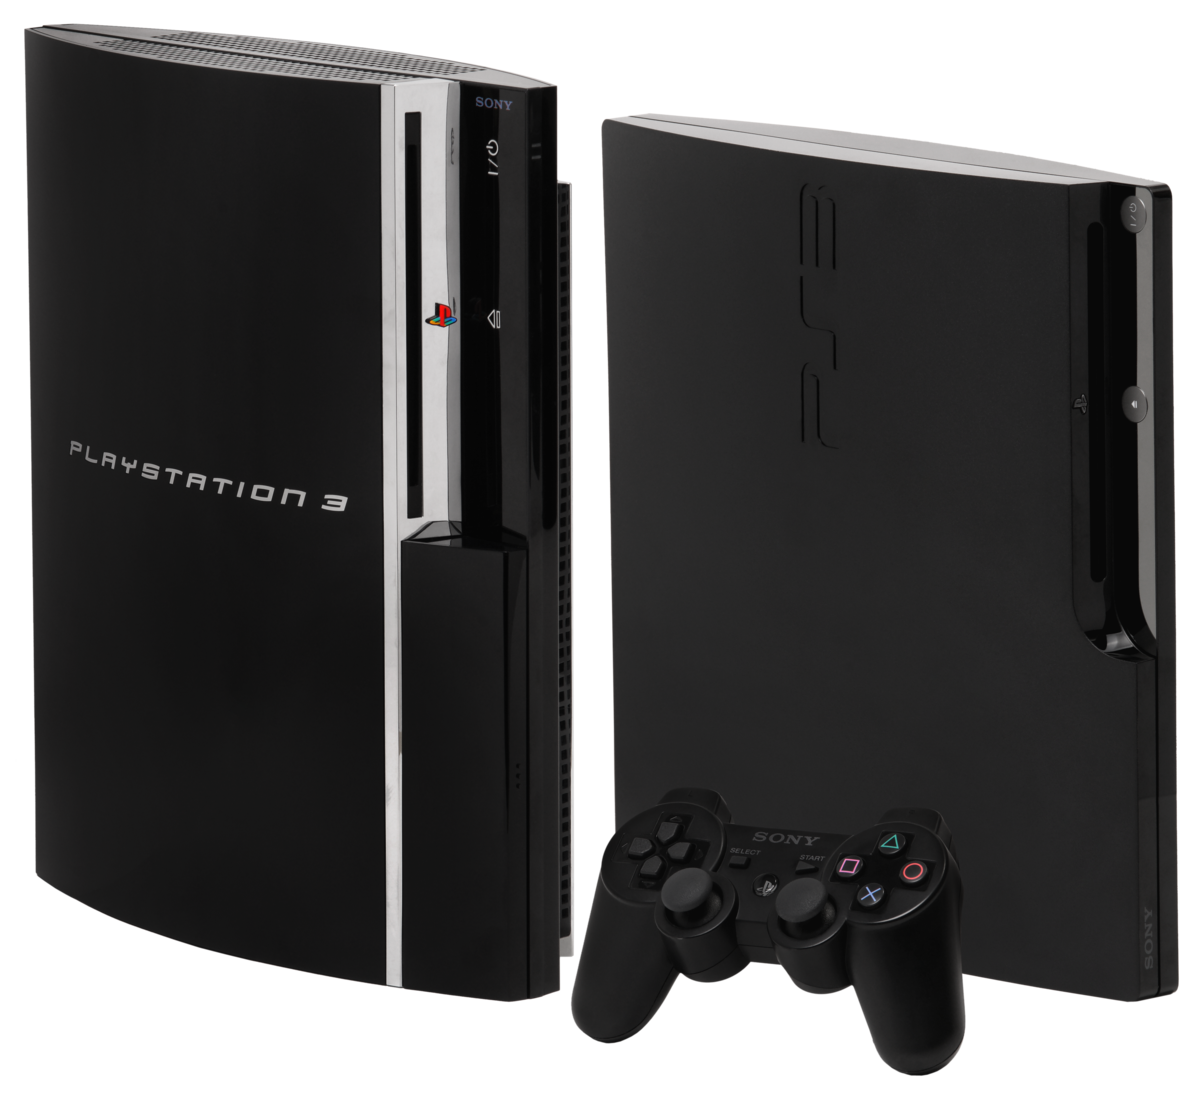 ᐅ GAMIMBO - Juegos PS3 PLAYSTATION 3 (precintados) de PS3 nuevo o de  segunda mano